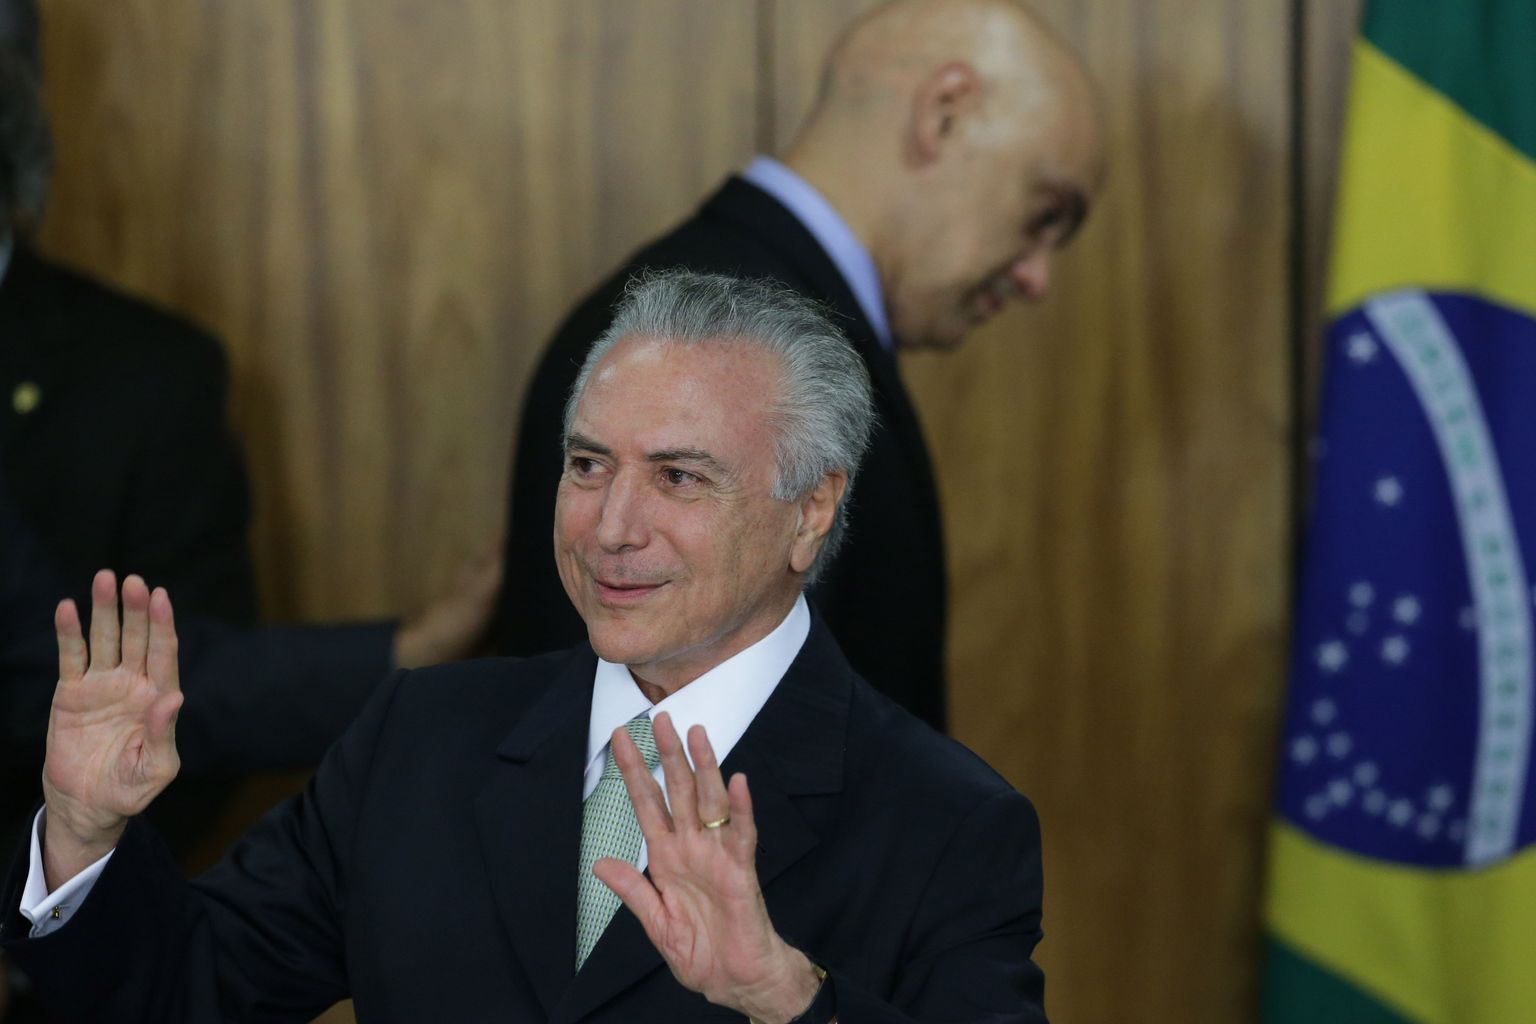 Presidendi kohusetäitjaks saanud Michel Temer tõdes, et uus valitsus peab taastama Brasiilia võimude usaldusväärsuse rahva silmis.